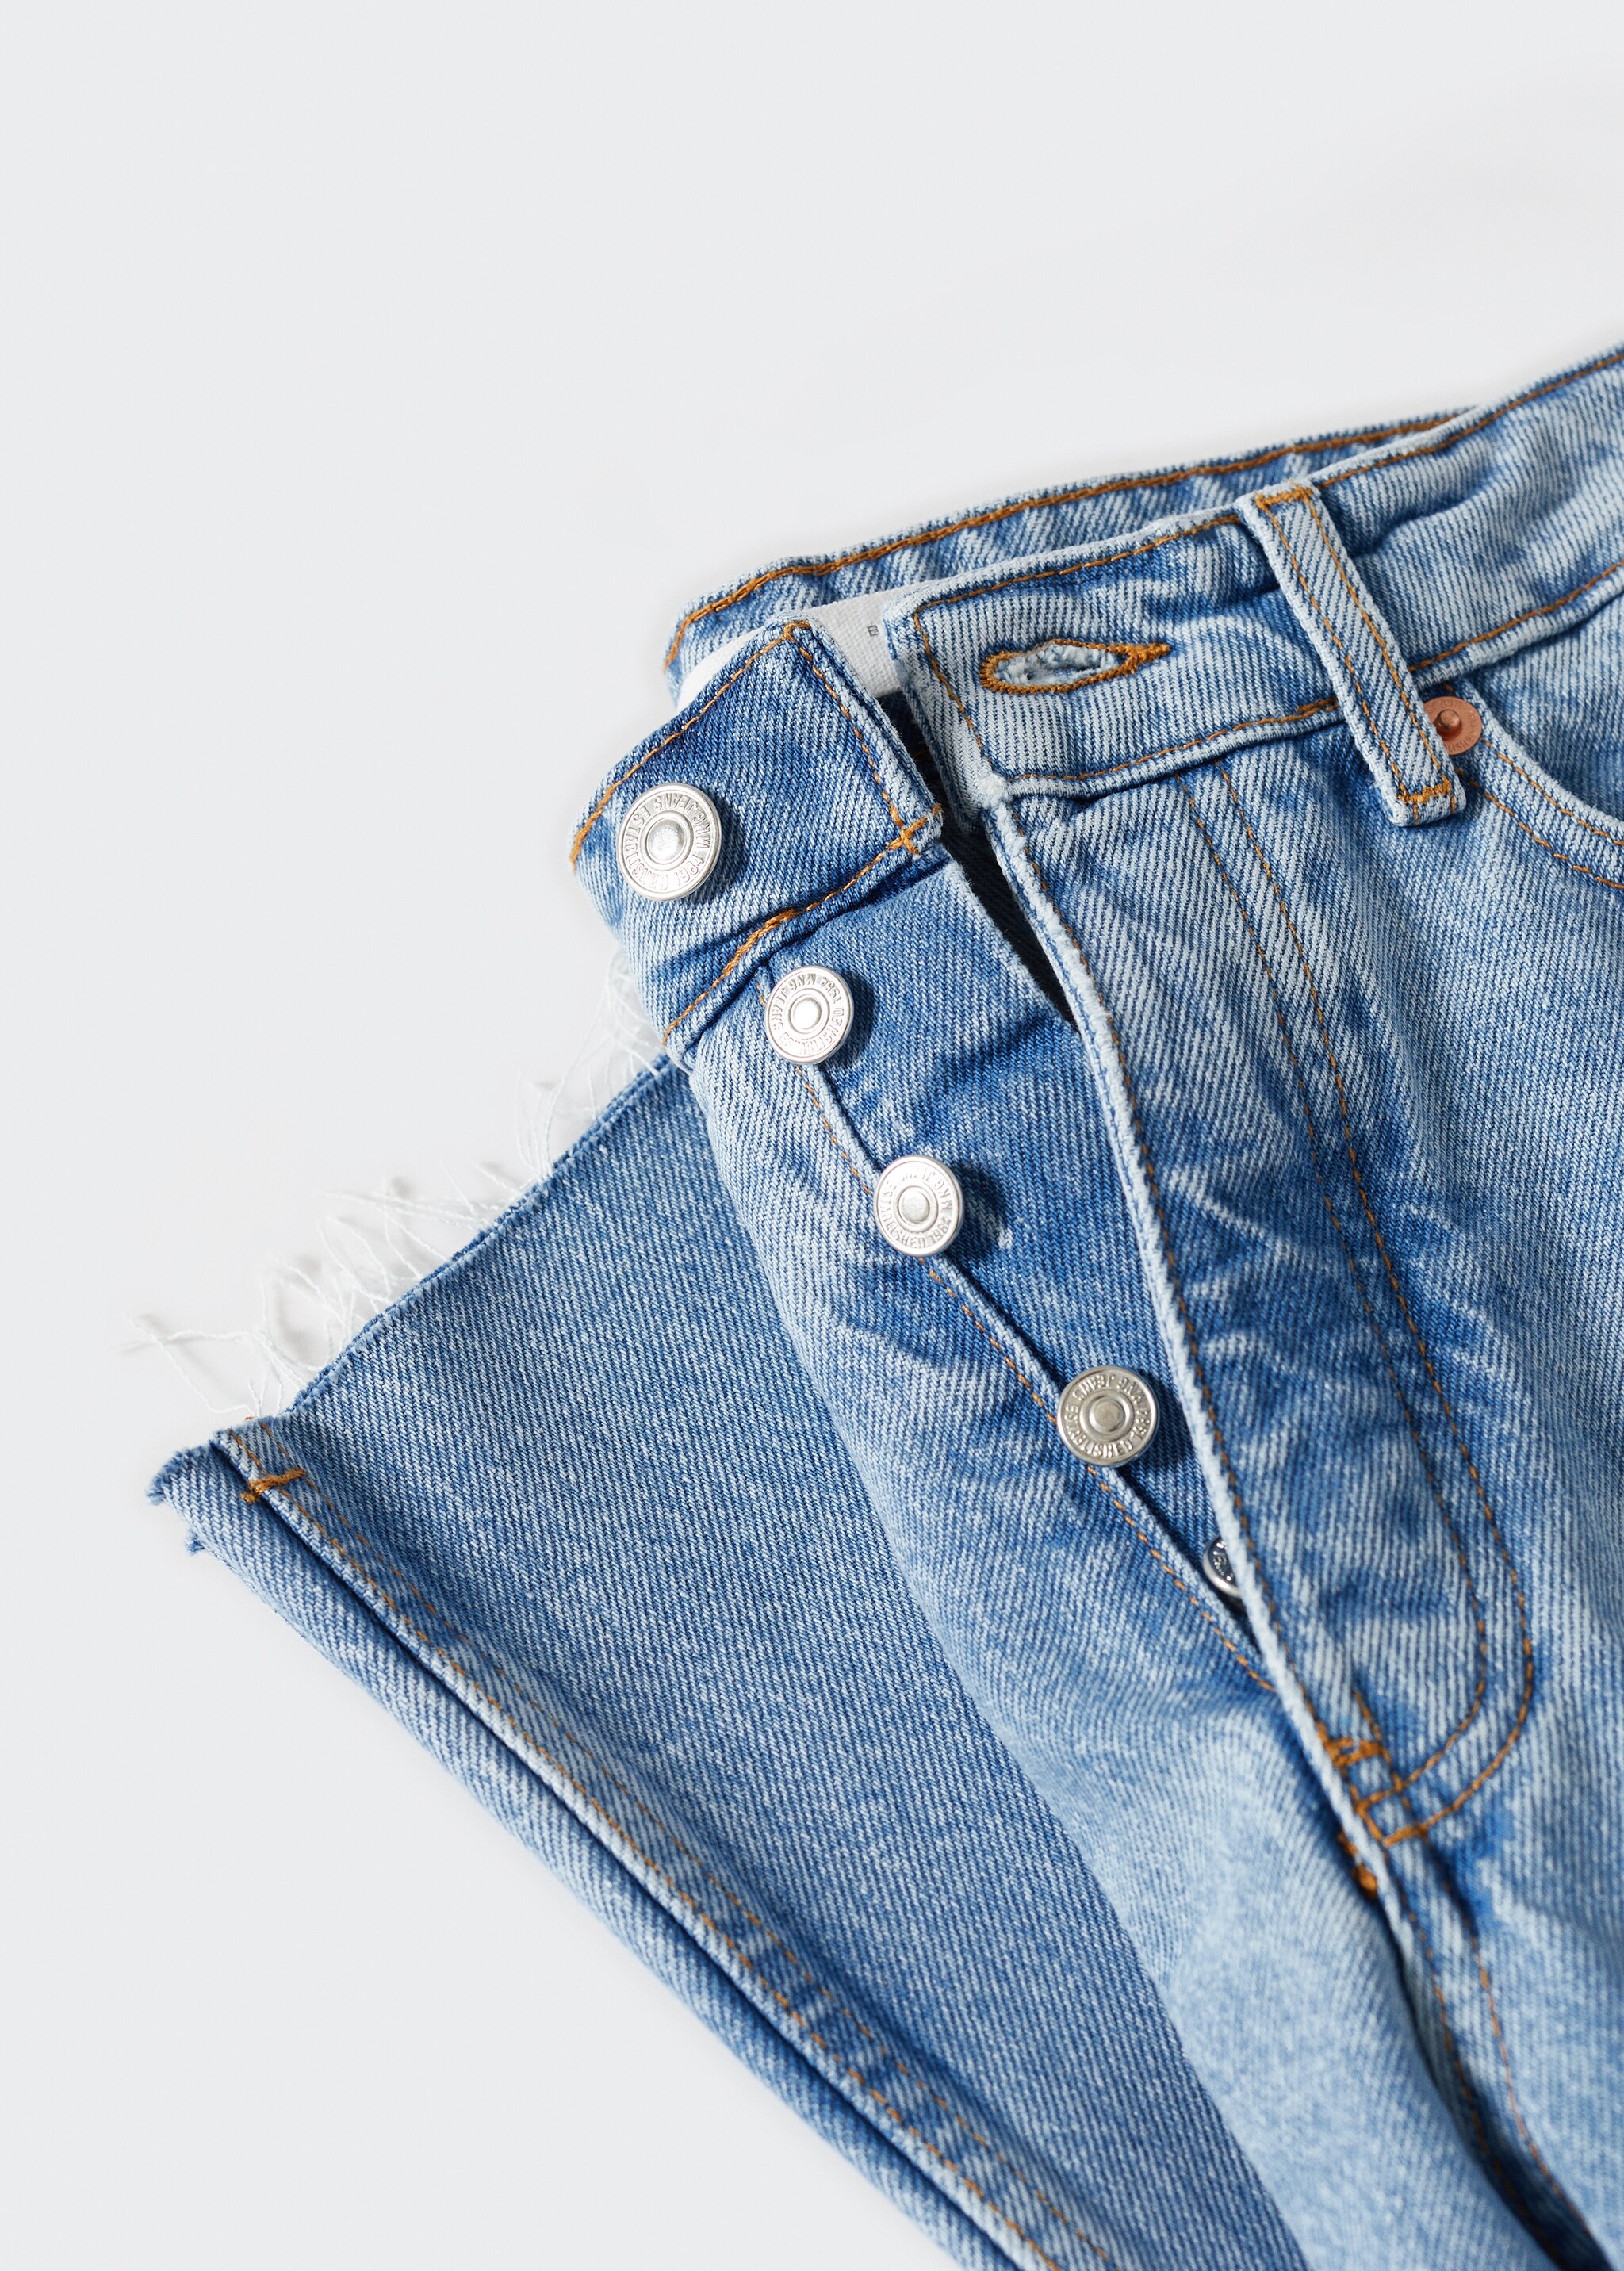 Jeans rectos tiro alto crop - Detalle del artículo 8